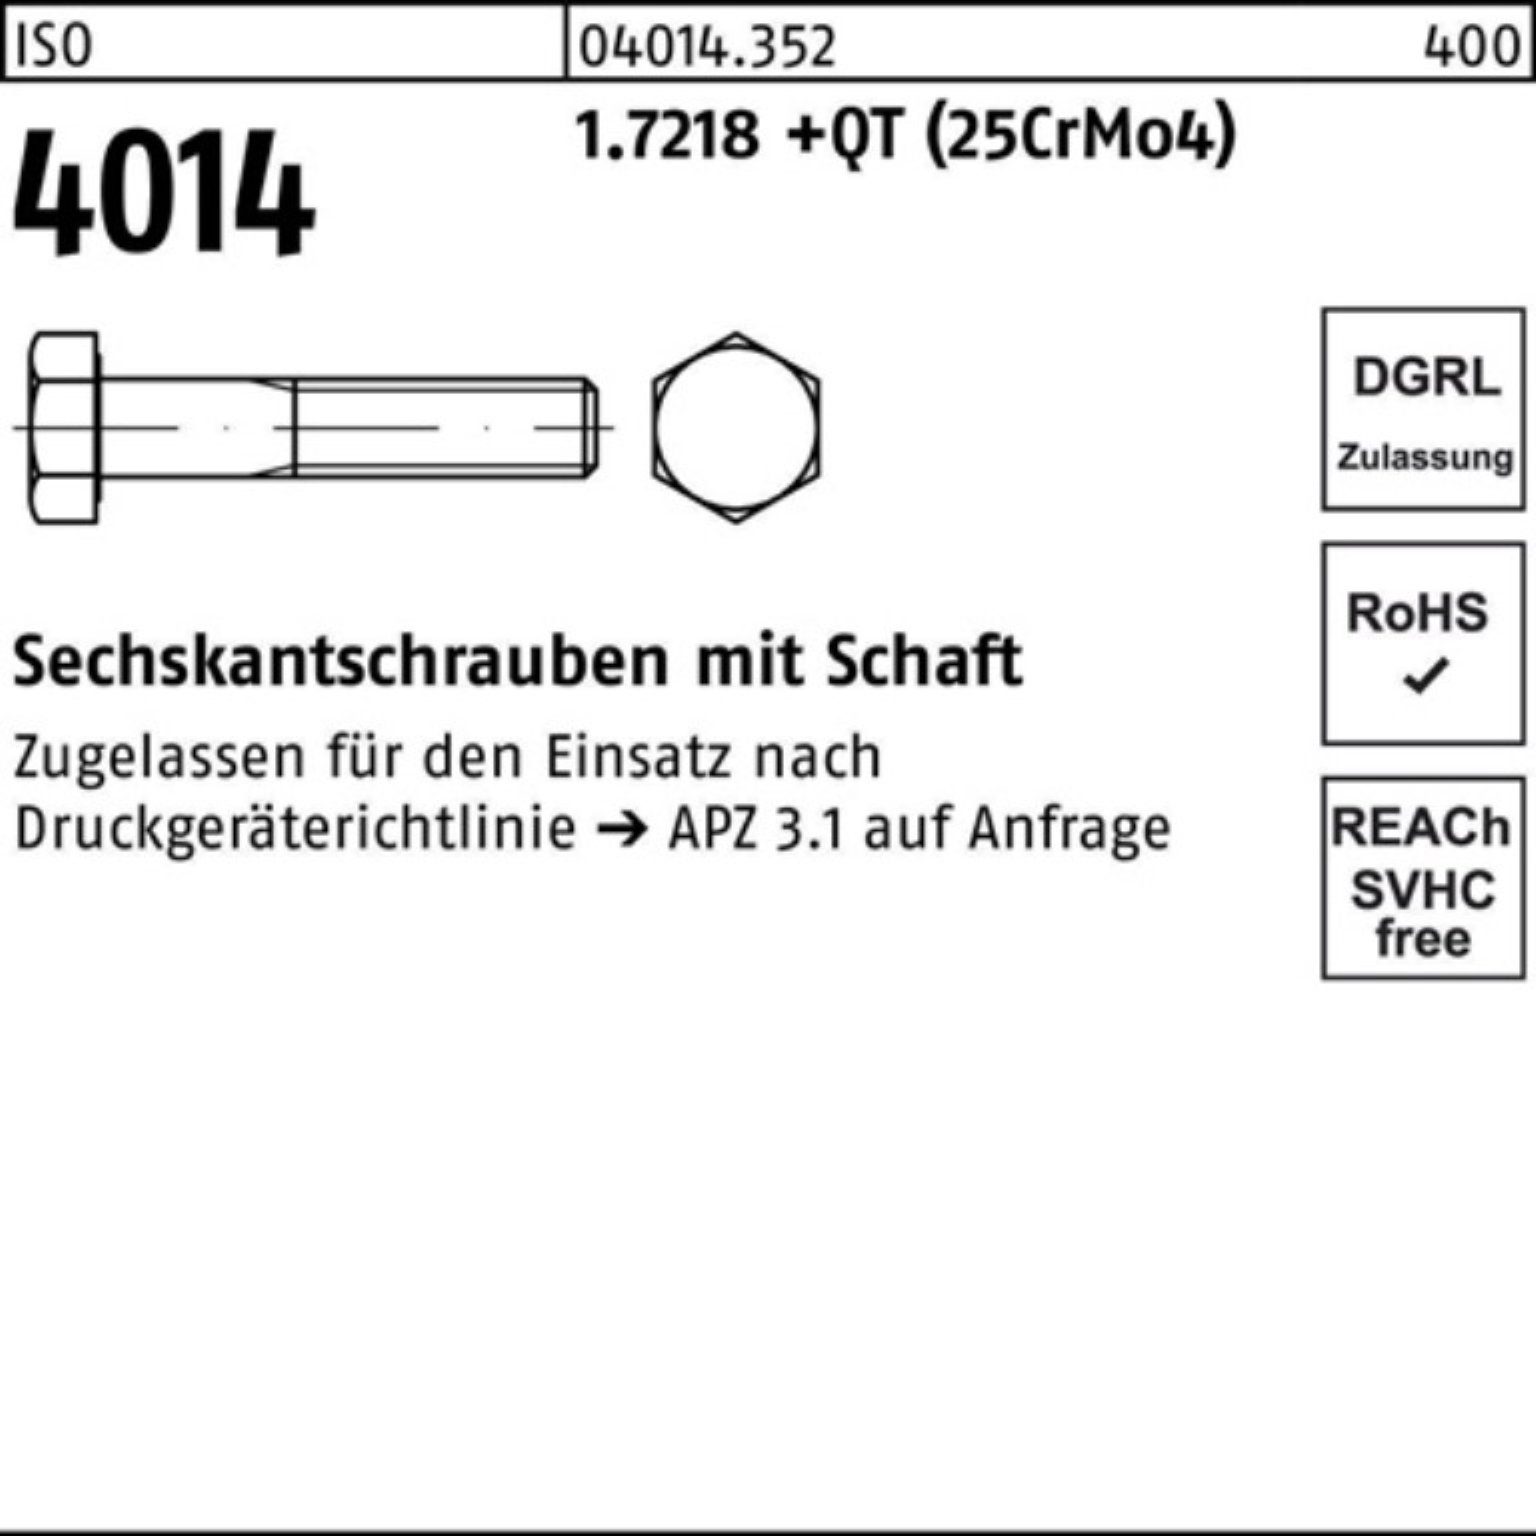 Pack Schaft 100er Bufab ISO Sechskantschraube M36x (25Cr Sechskantschraube 1.7218 140 4014 +QT